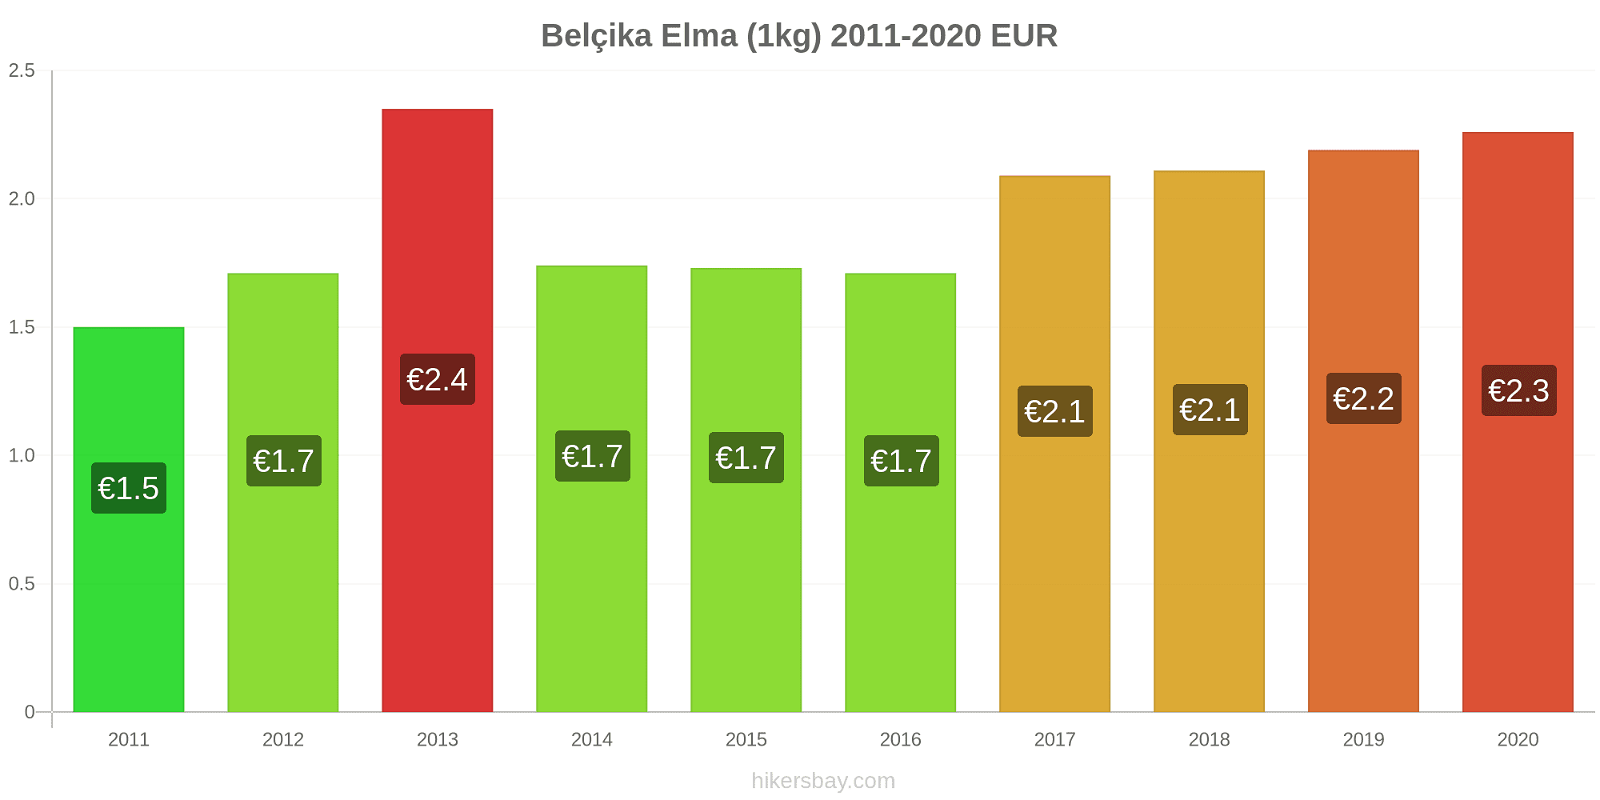 Belçika fiyat değişiklikleri Elma (1kg) hikersbay.com